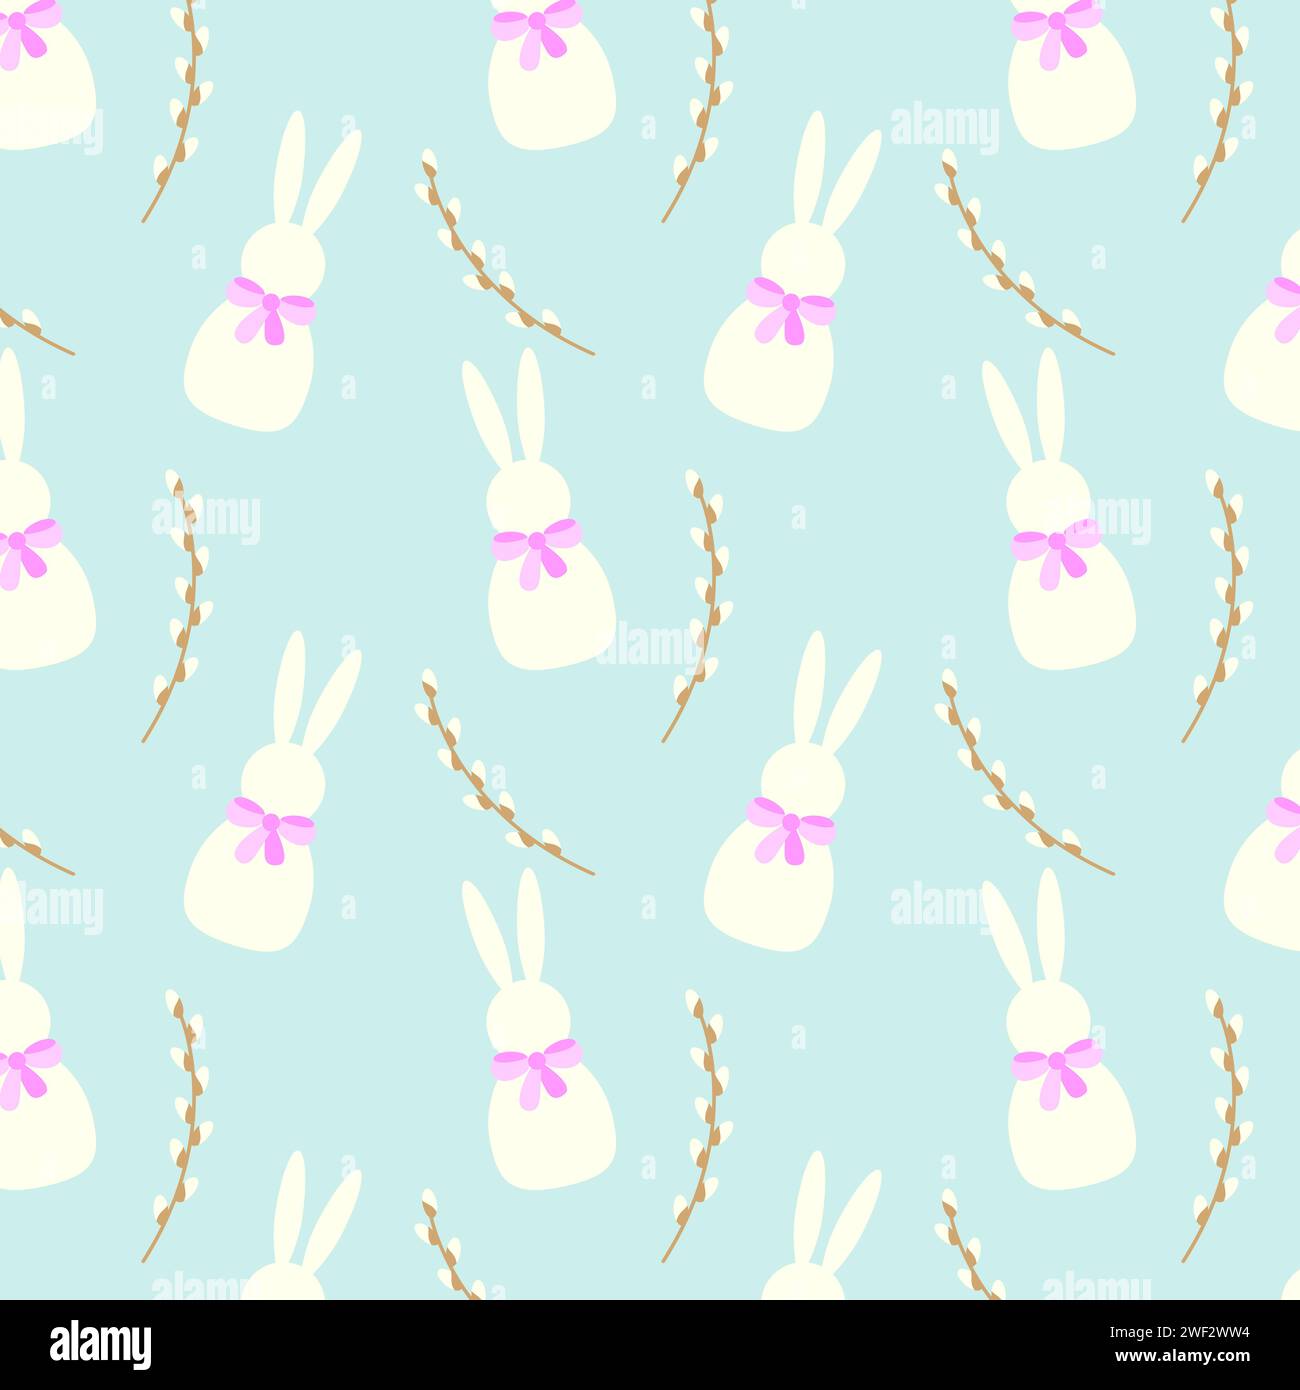 Motif répétitif mettant en vedette des lapins blancs avec des noeuds roses et des branches de saule marron sur fond de couleurs pastel bleu, généralement utilisé pour Pâques festif Illustration de Vecteur